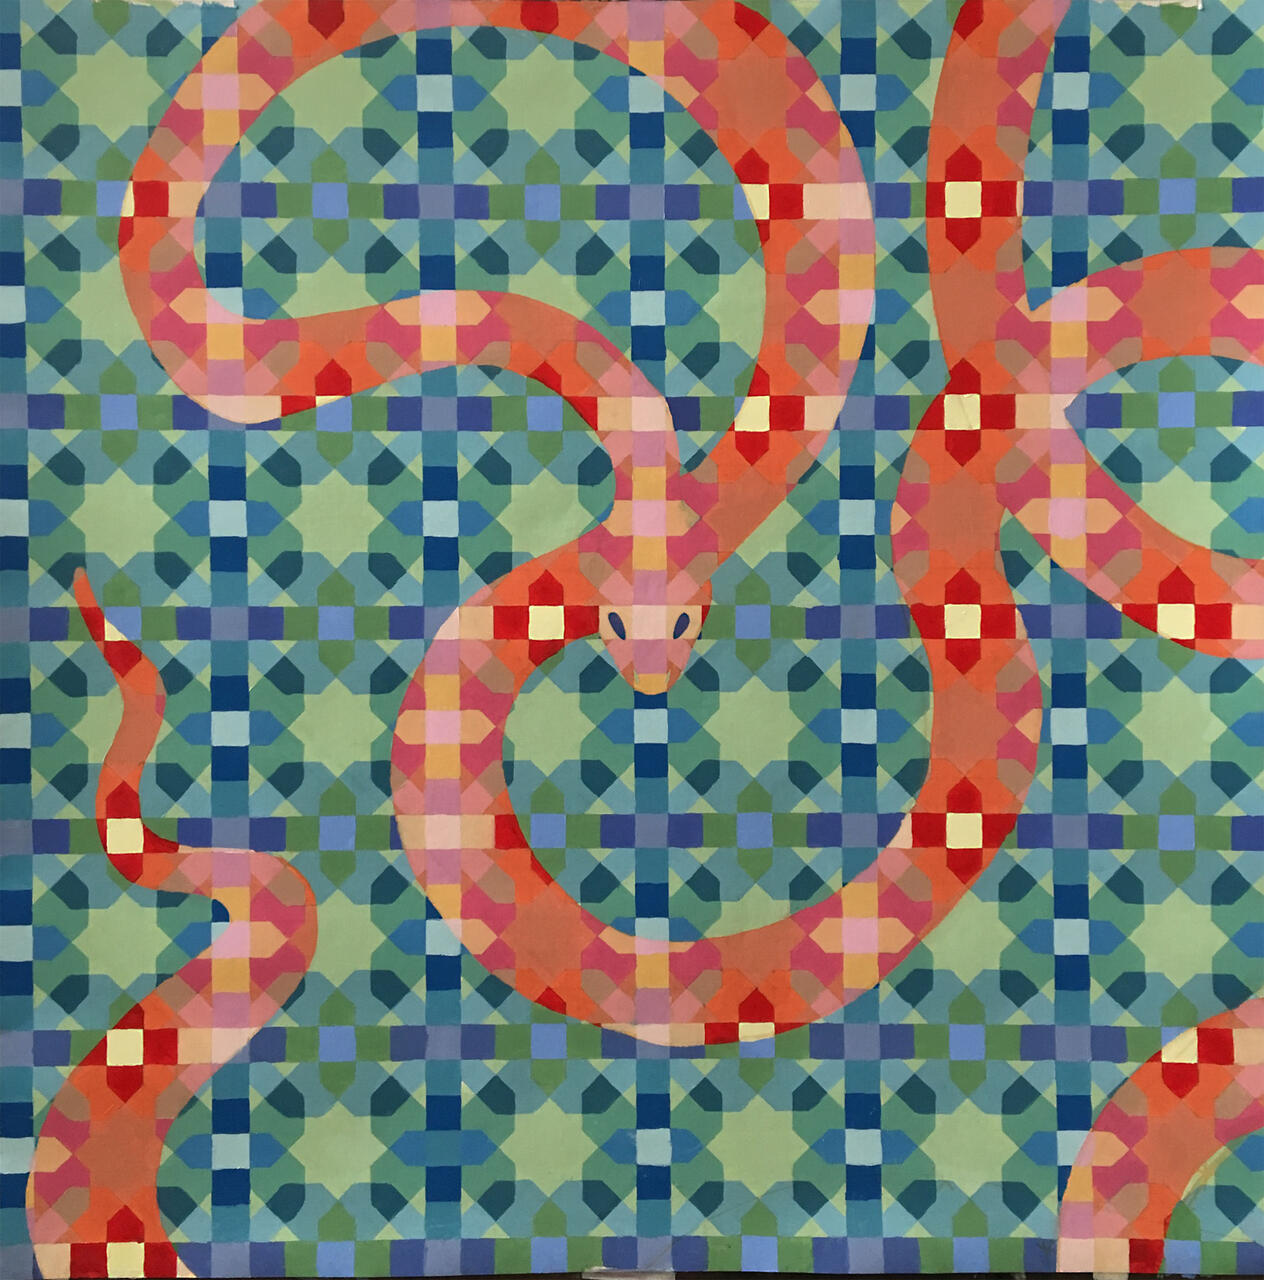 Color pattern study of snake